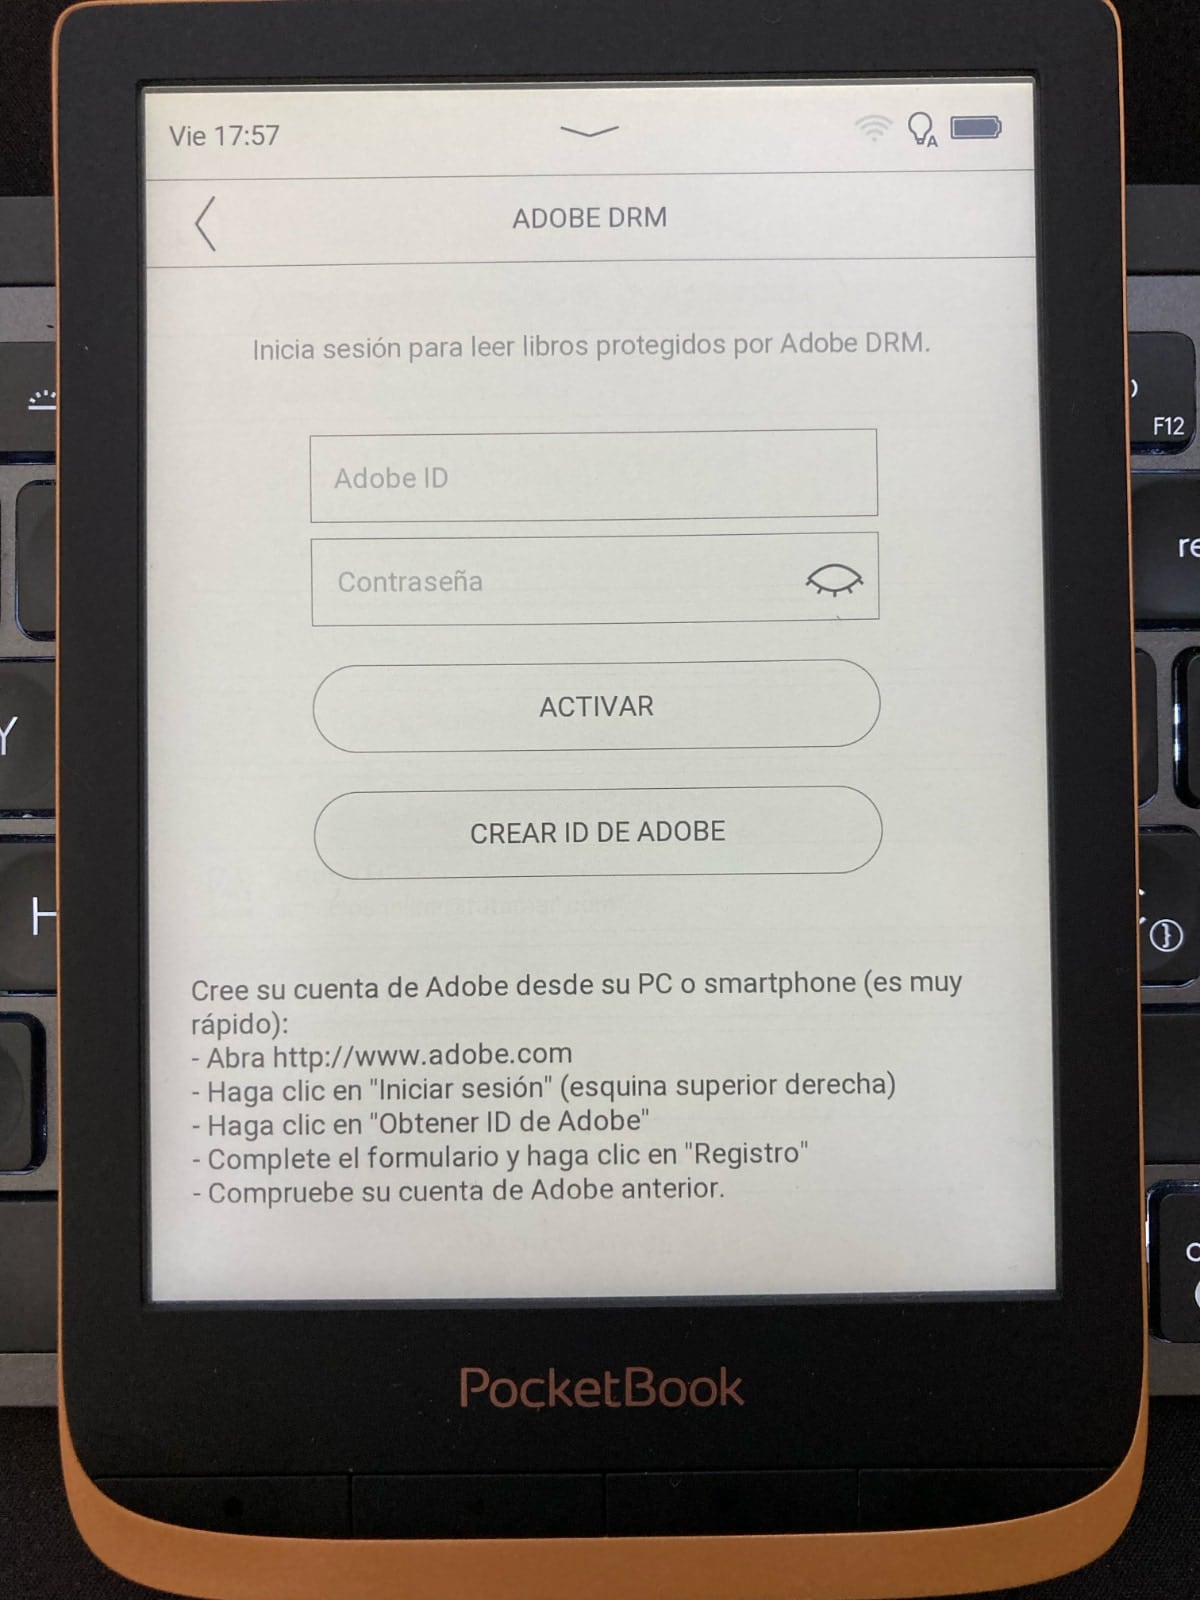 Activar la cuenta de usuario de Adobe en nuestro PocketBook: menú Adobe DRM 